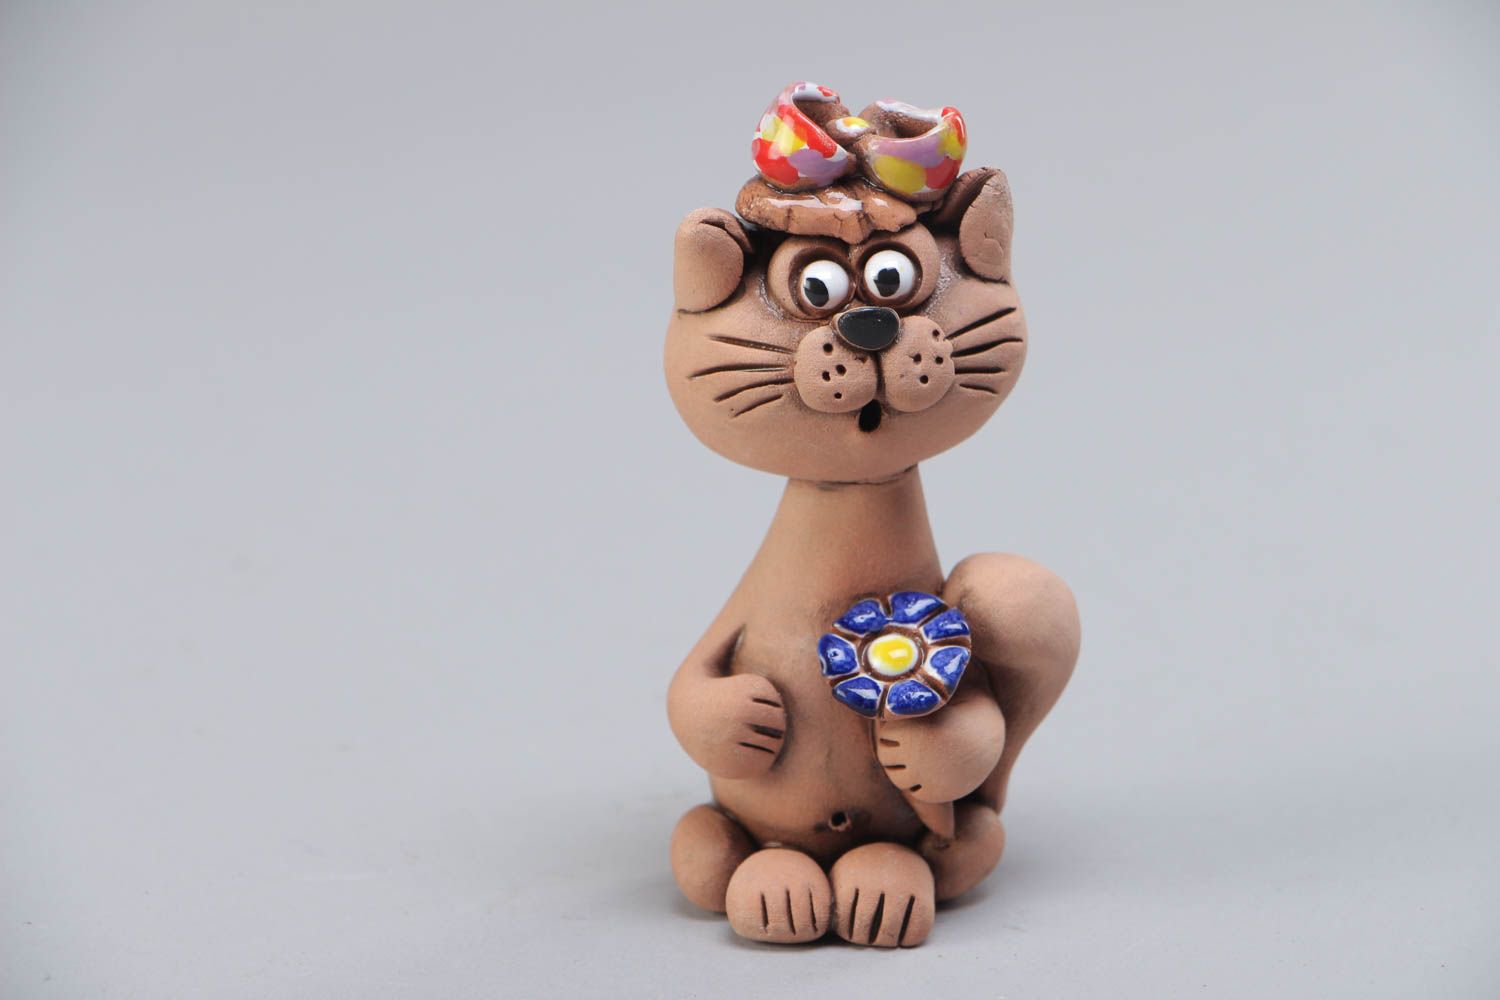 Фигурка кошки из глины расписанная красками маленькая красивая ручной работы фото 2